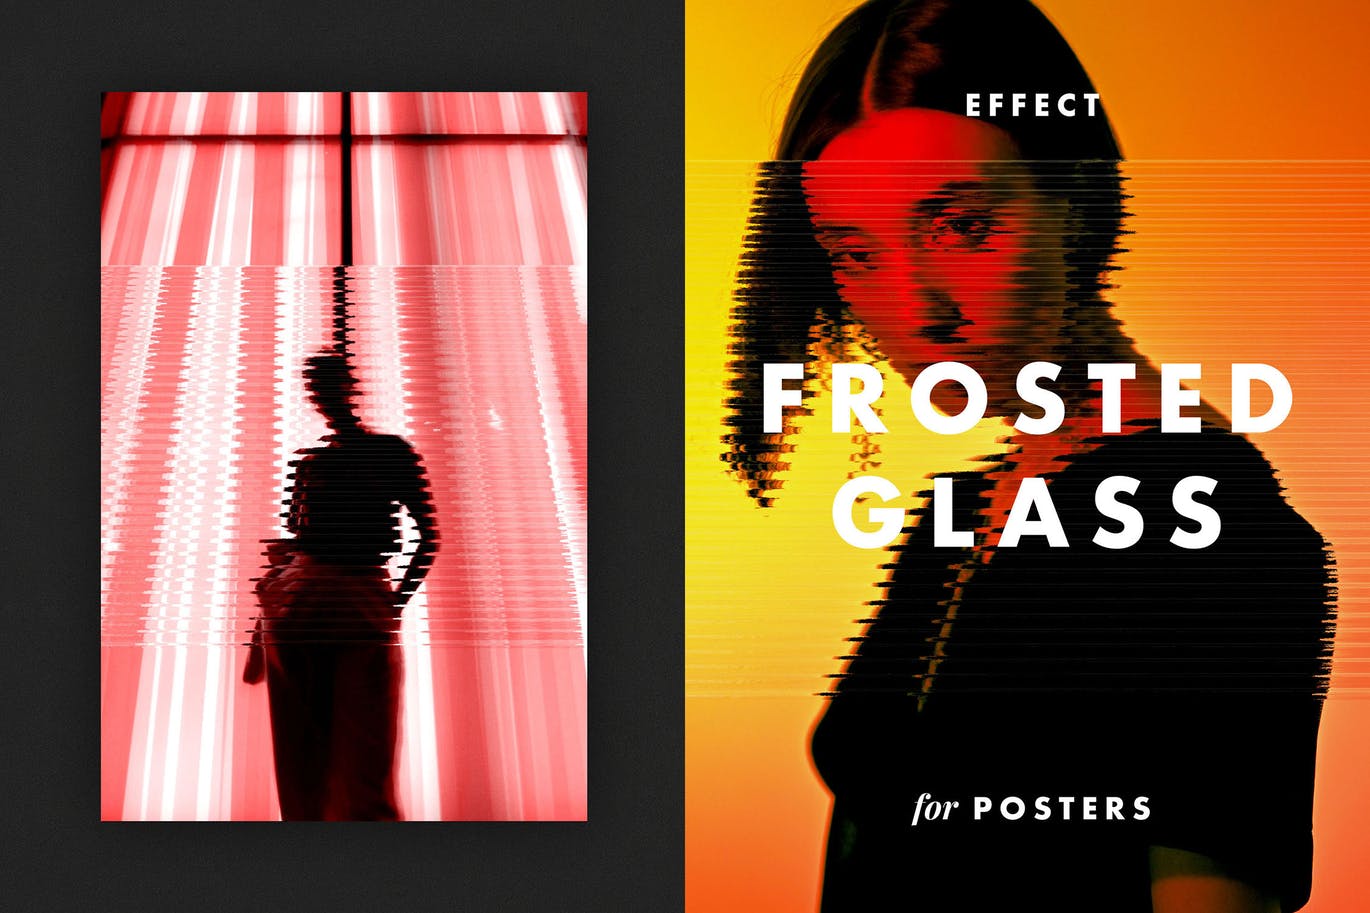 线条磨砂玻璃效果海报模板 Frosted Glass Effect for Posters 插件预设 第1张